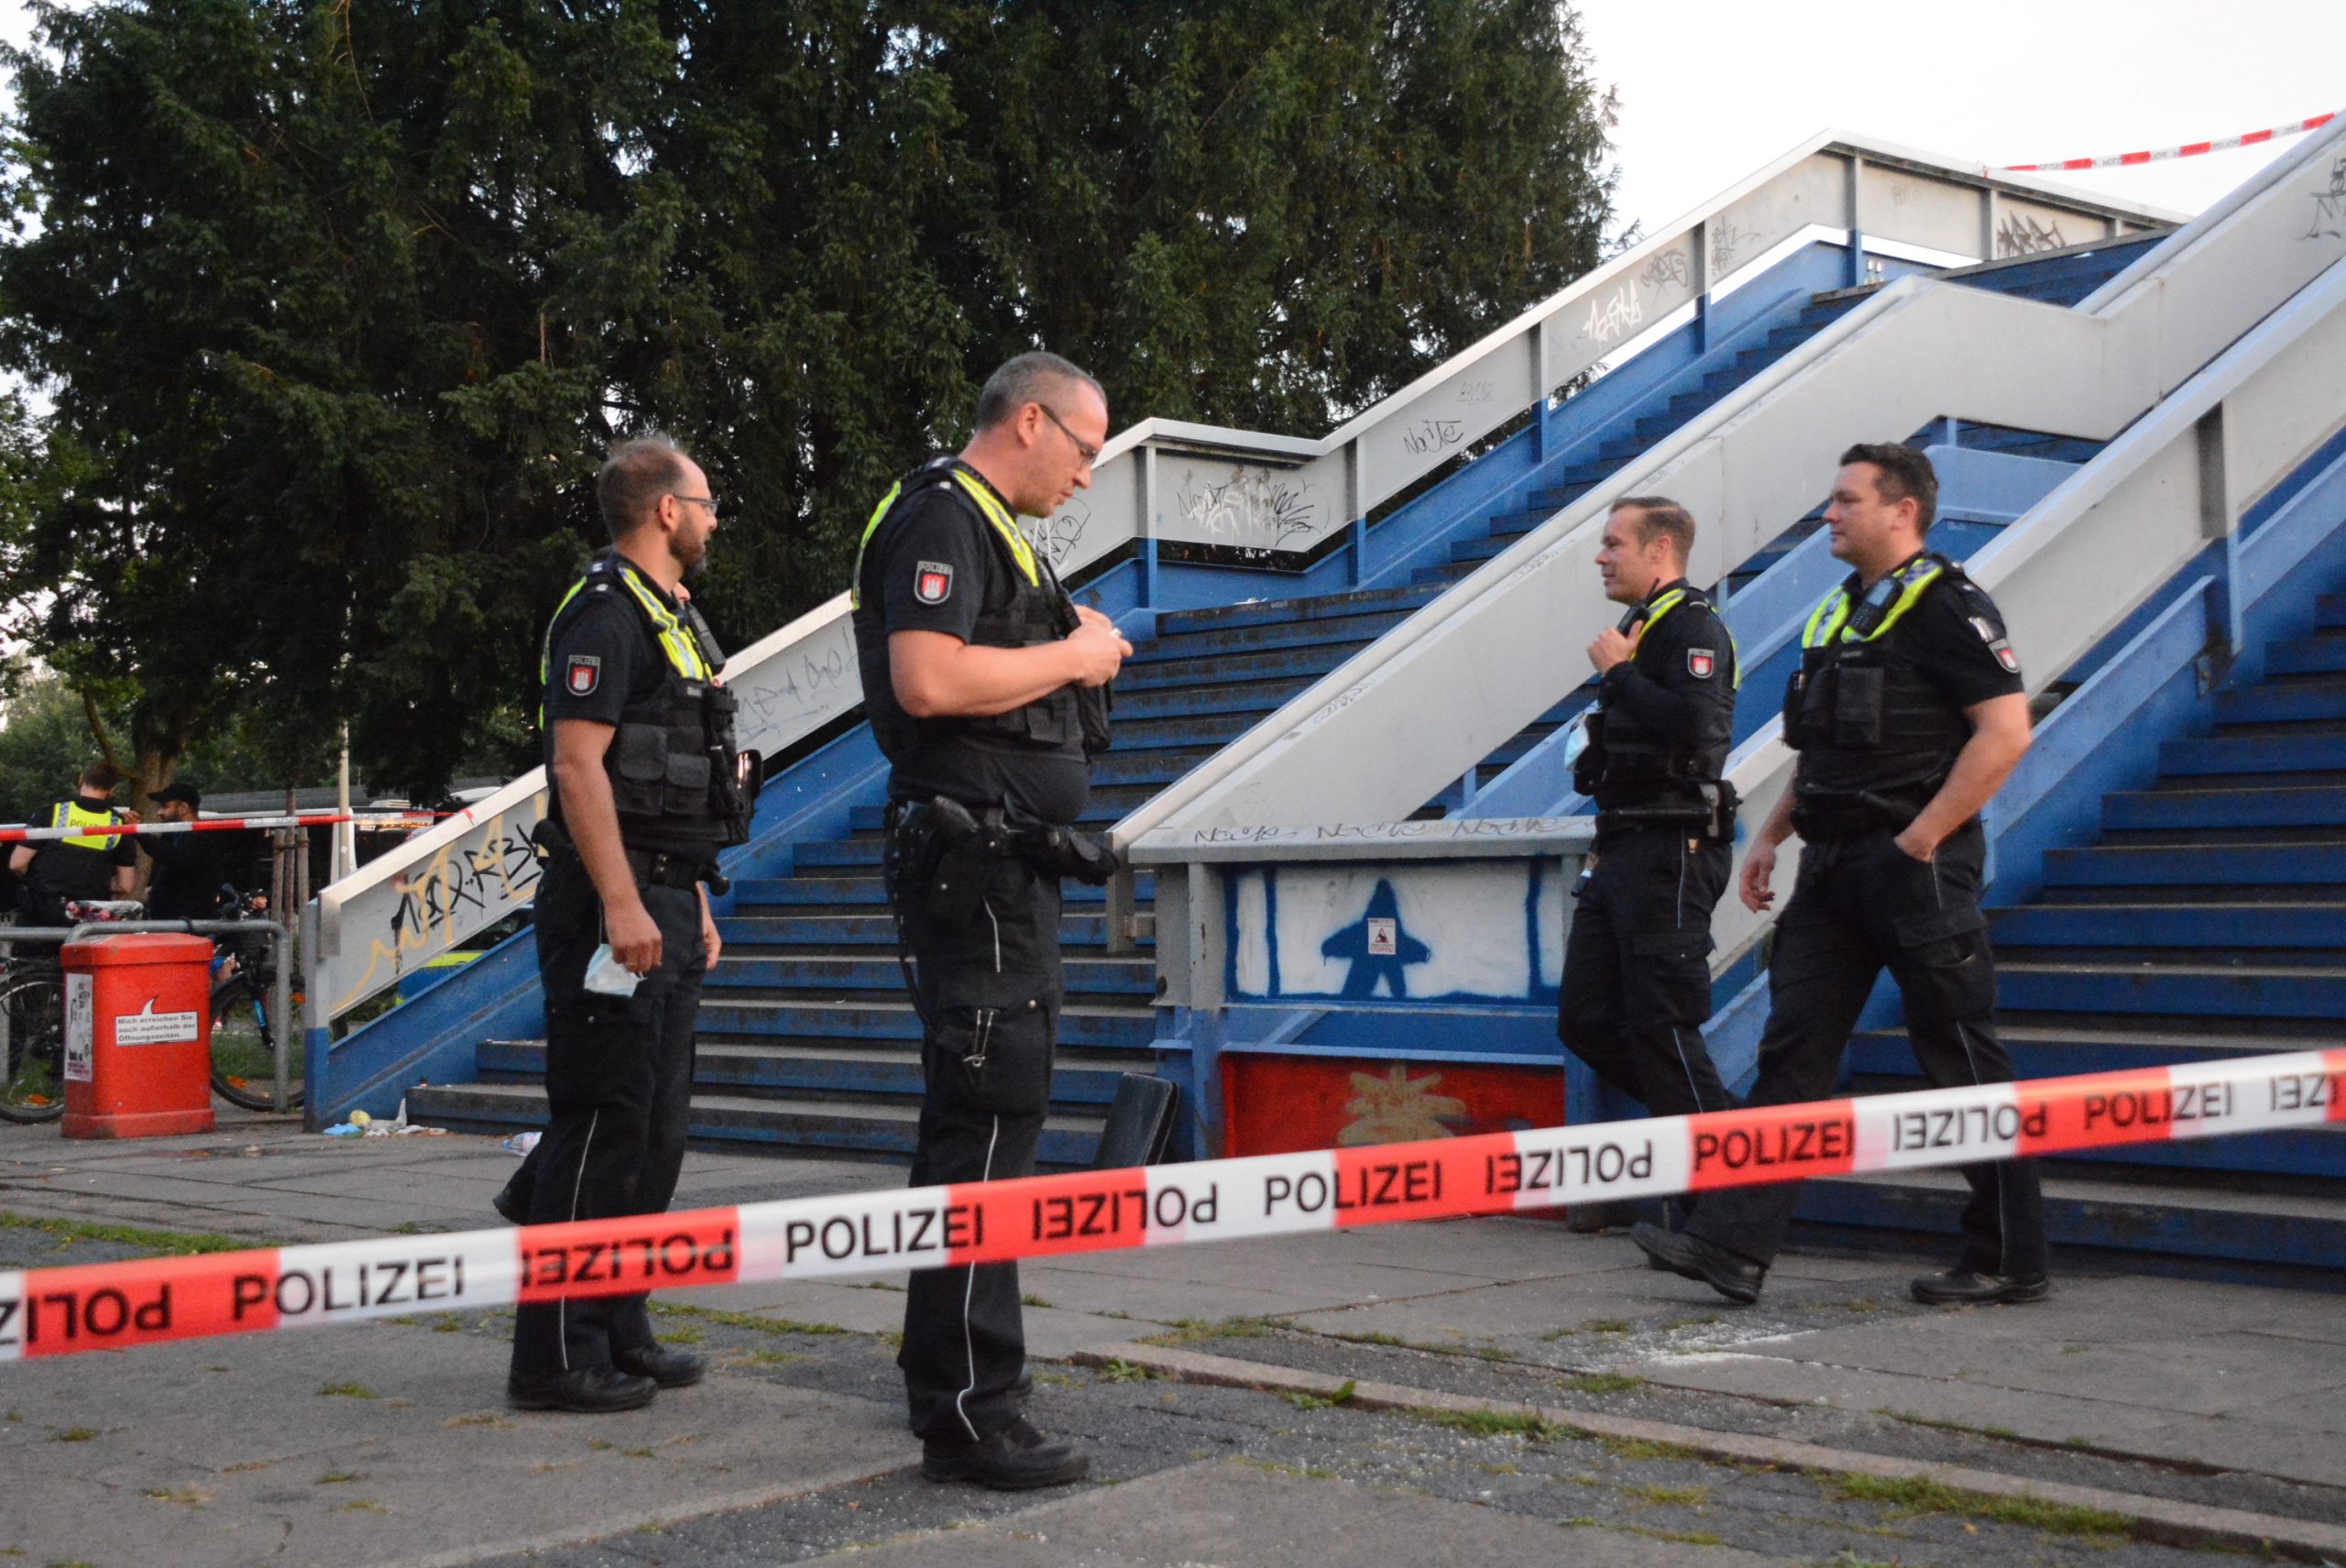 Flatterband der Polizei sperrt den Tatort an einer Treppe ab